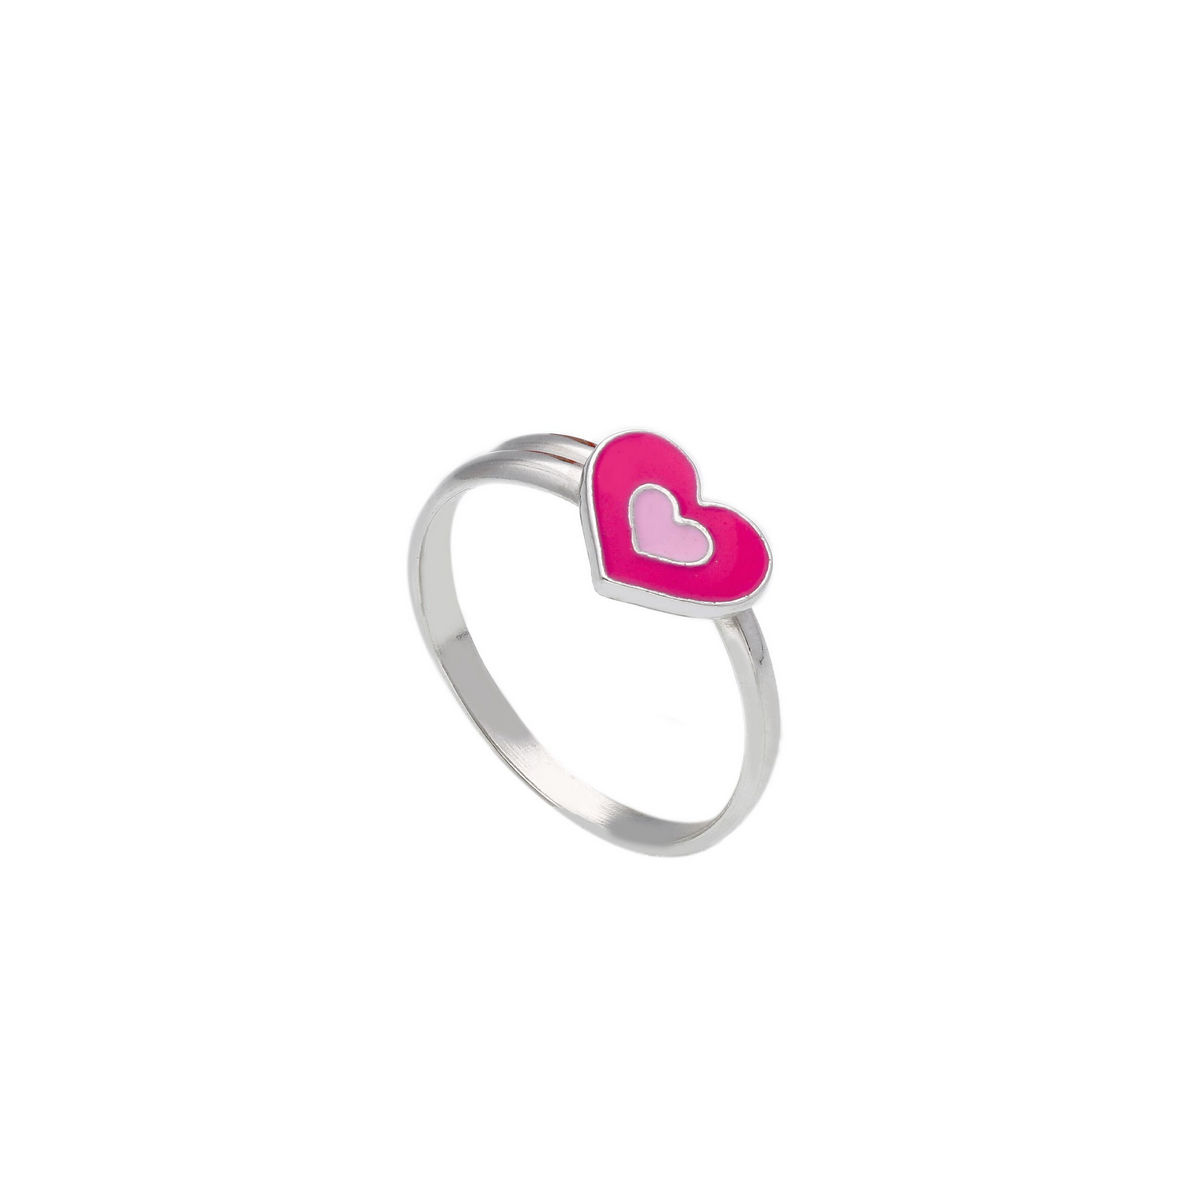 Εικόνα του προιόντος Ασημένιο Δαχτυλίδι Καρδιά Ροζ Σμάλτο